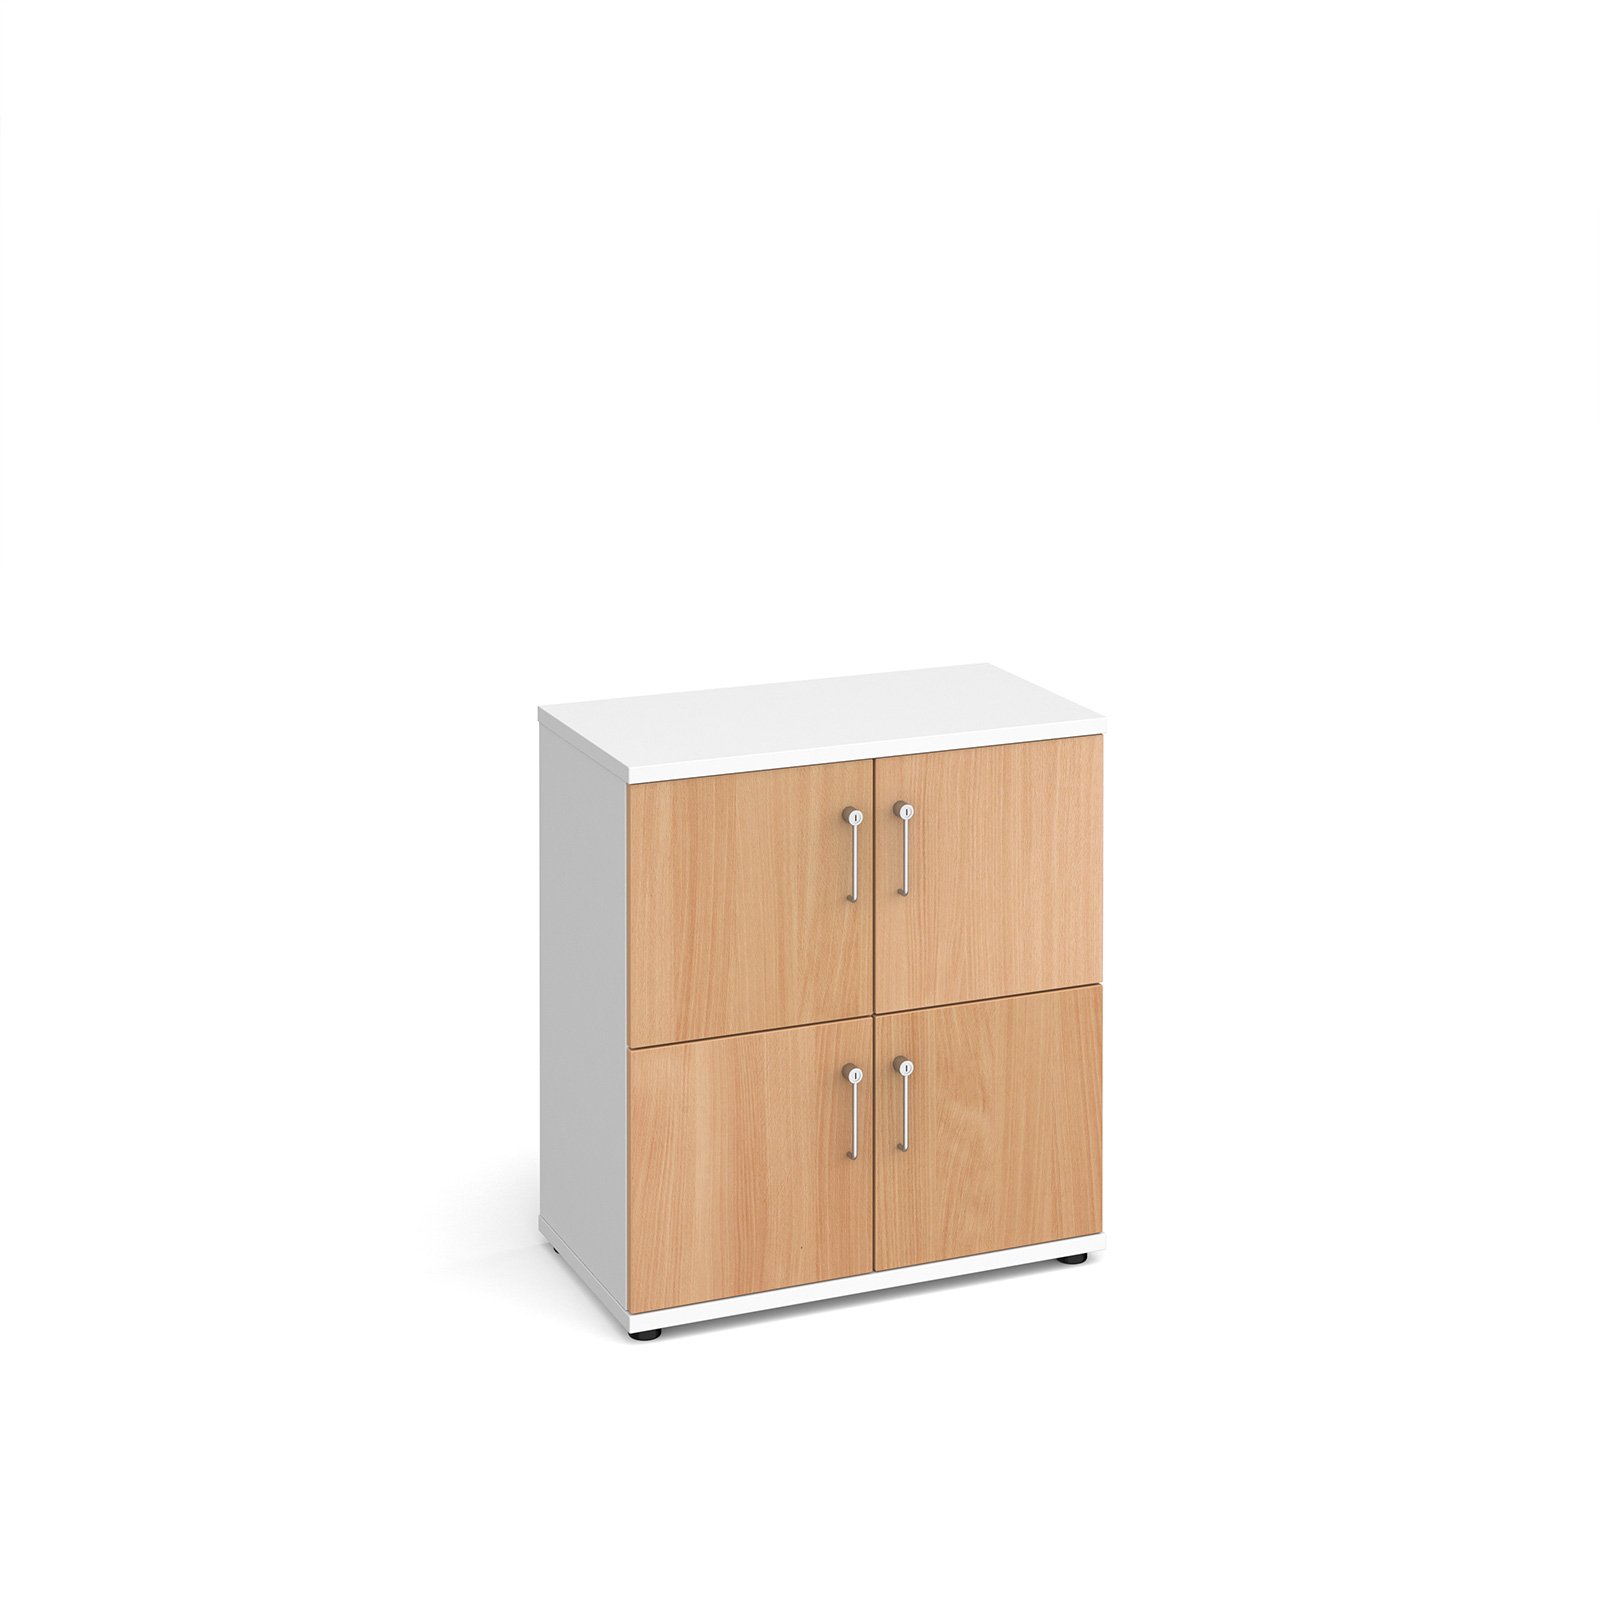 Wooden storage lockers 4 door - white with beech doors